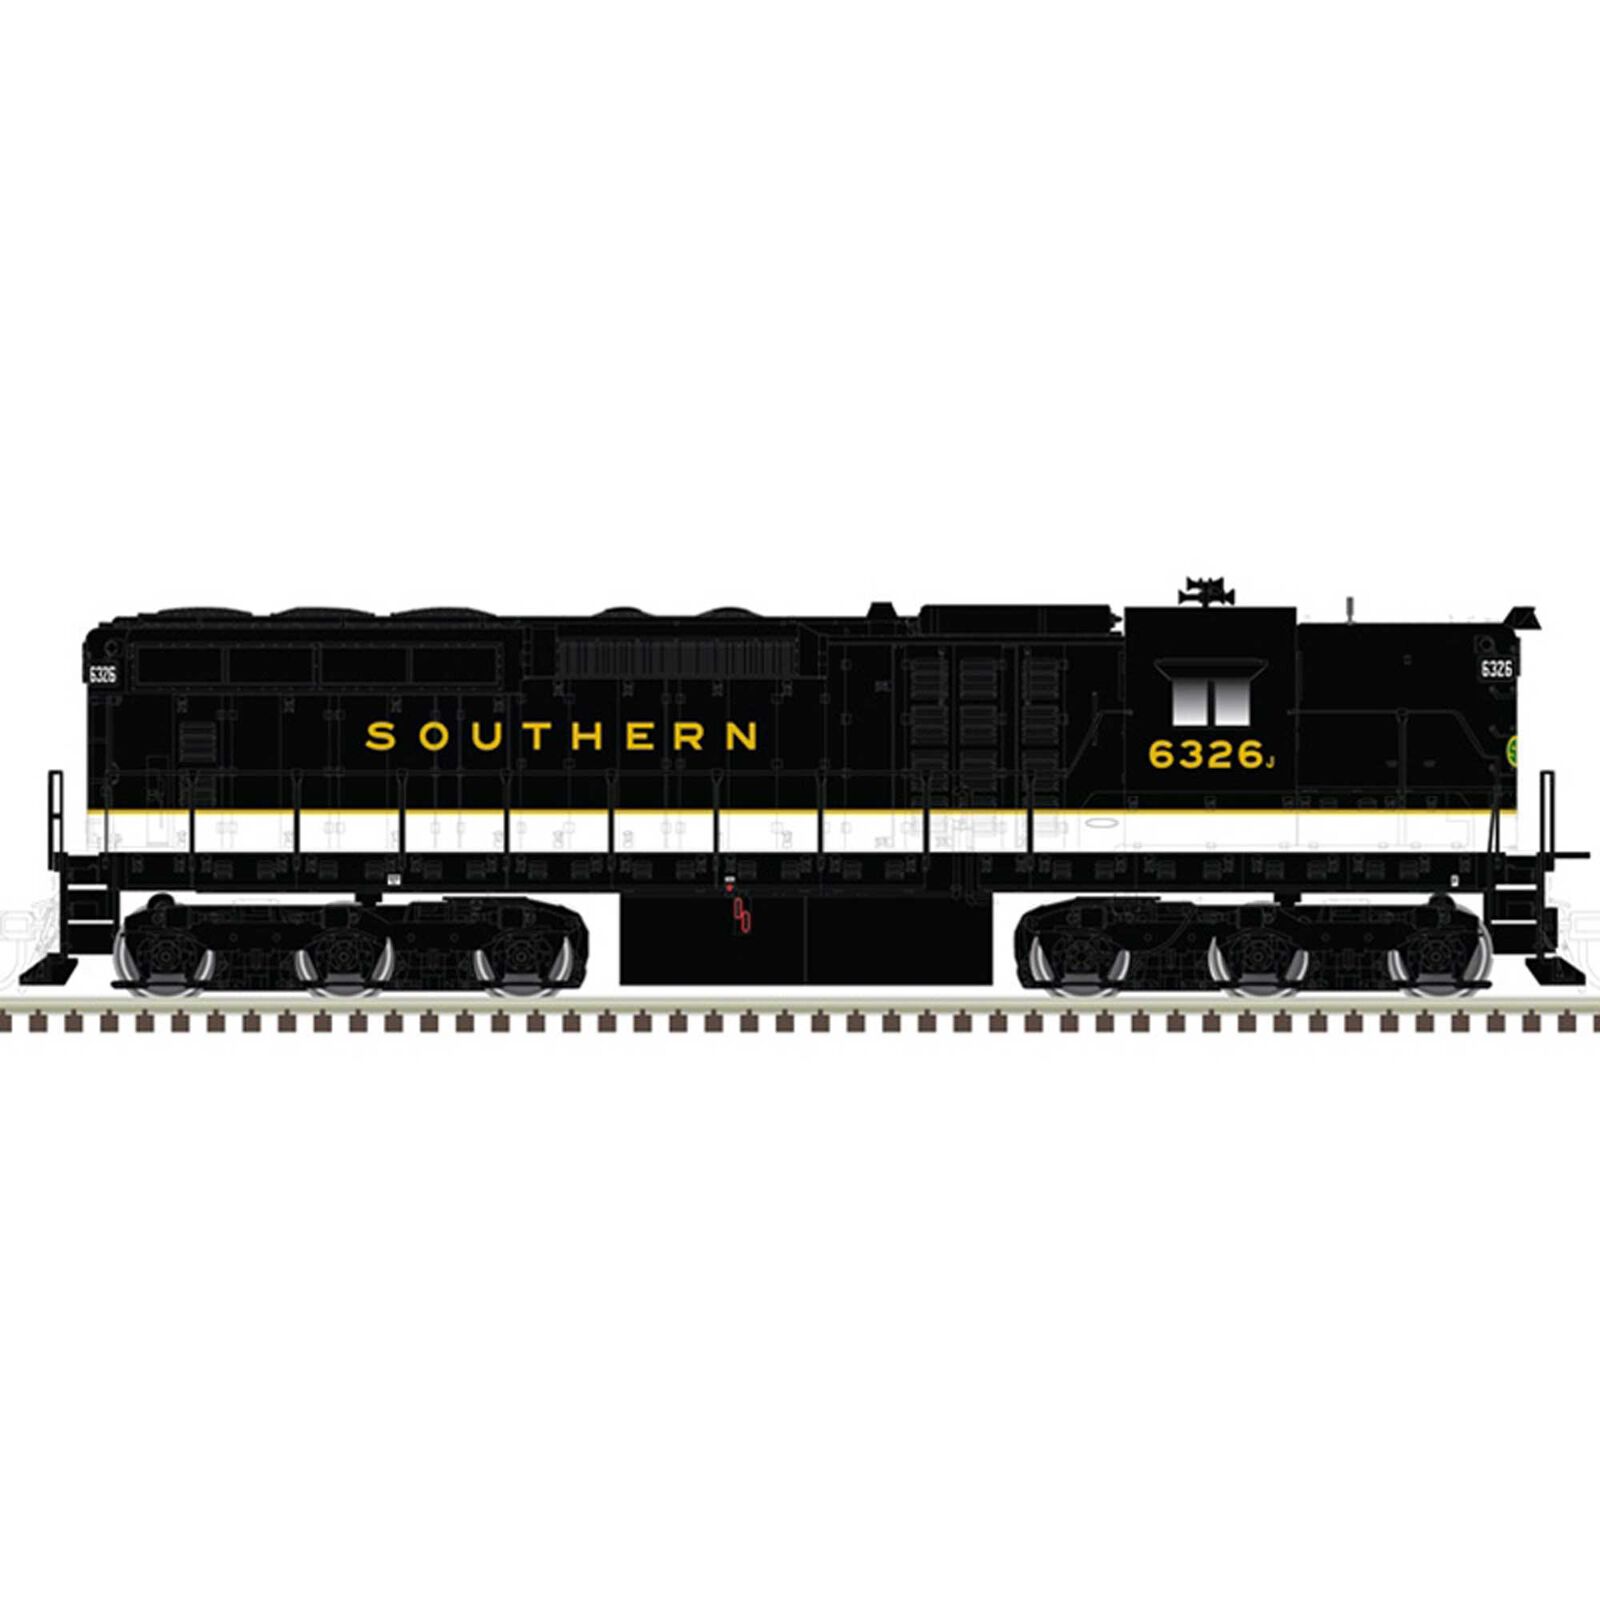 Southern (SR Logo) 6326J (Black White)